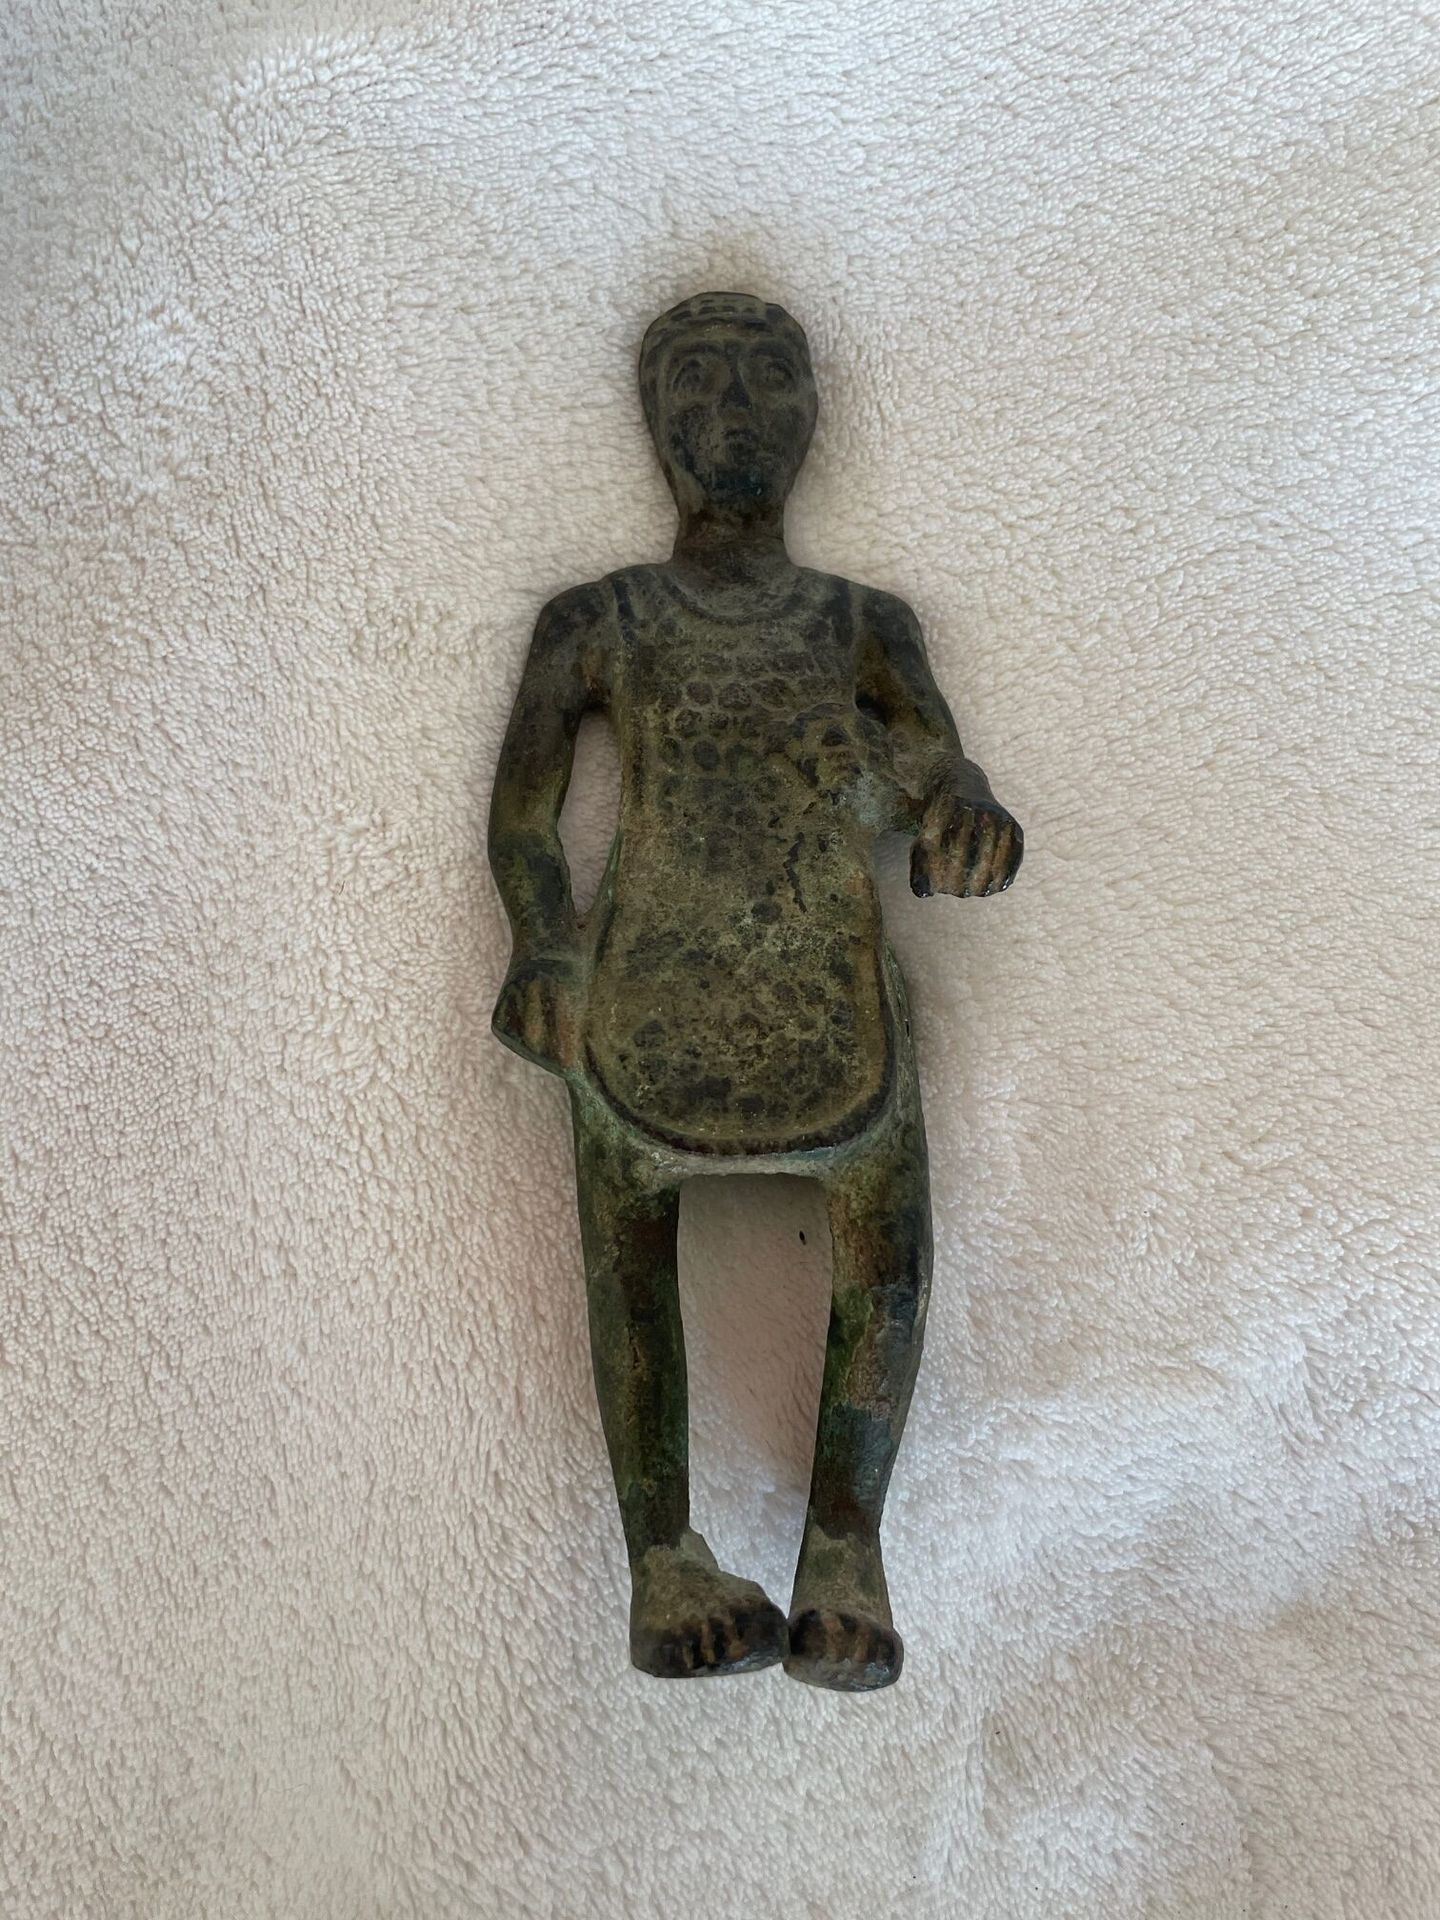 Null 拍品：一个带头饰的黑木裸体女人雕像，一个带头饰的男人雕像，携带一个符号，非洲风格，以及一个罗马人的小铜像，古董风格。